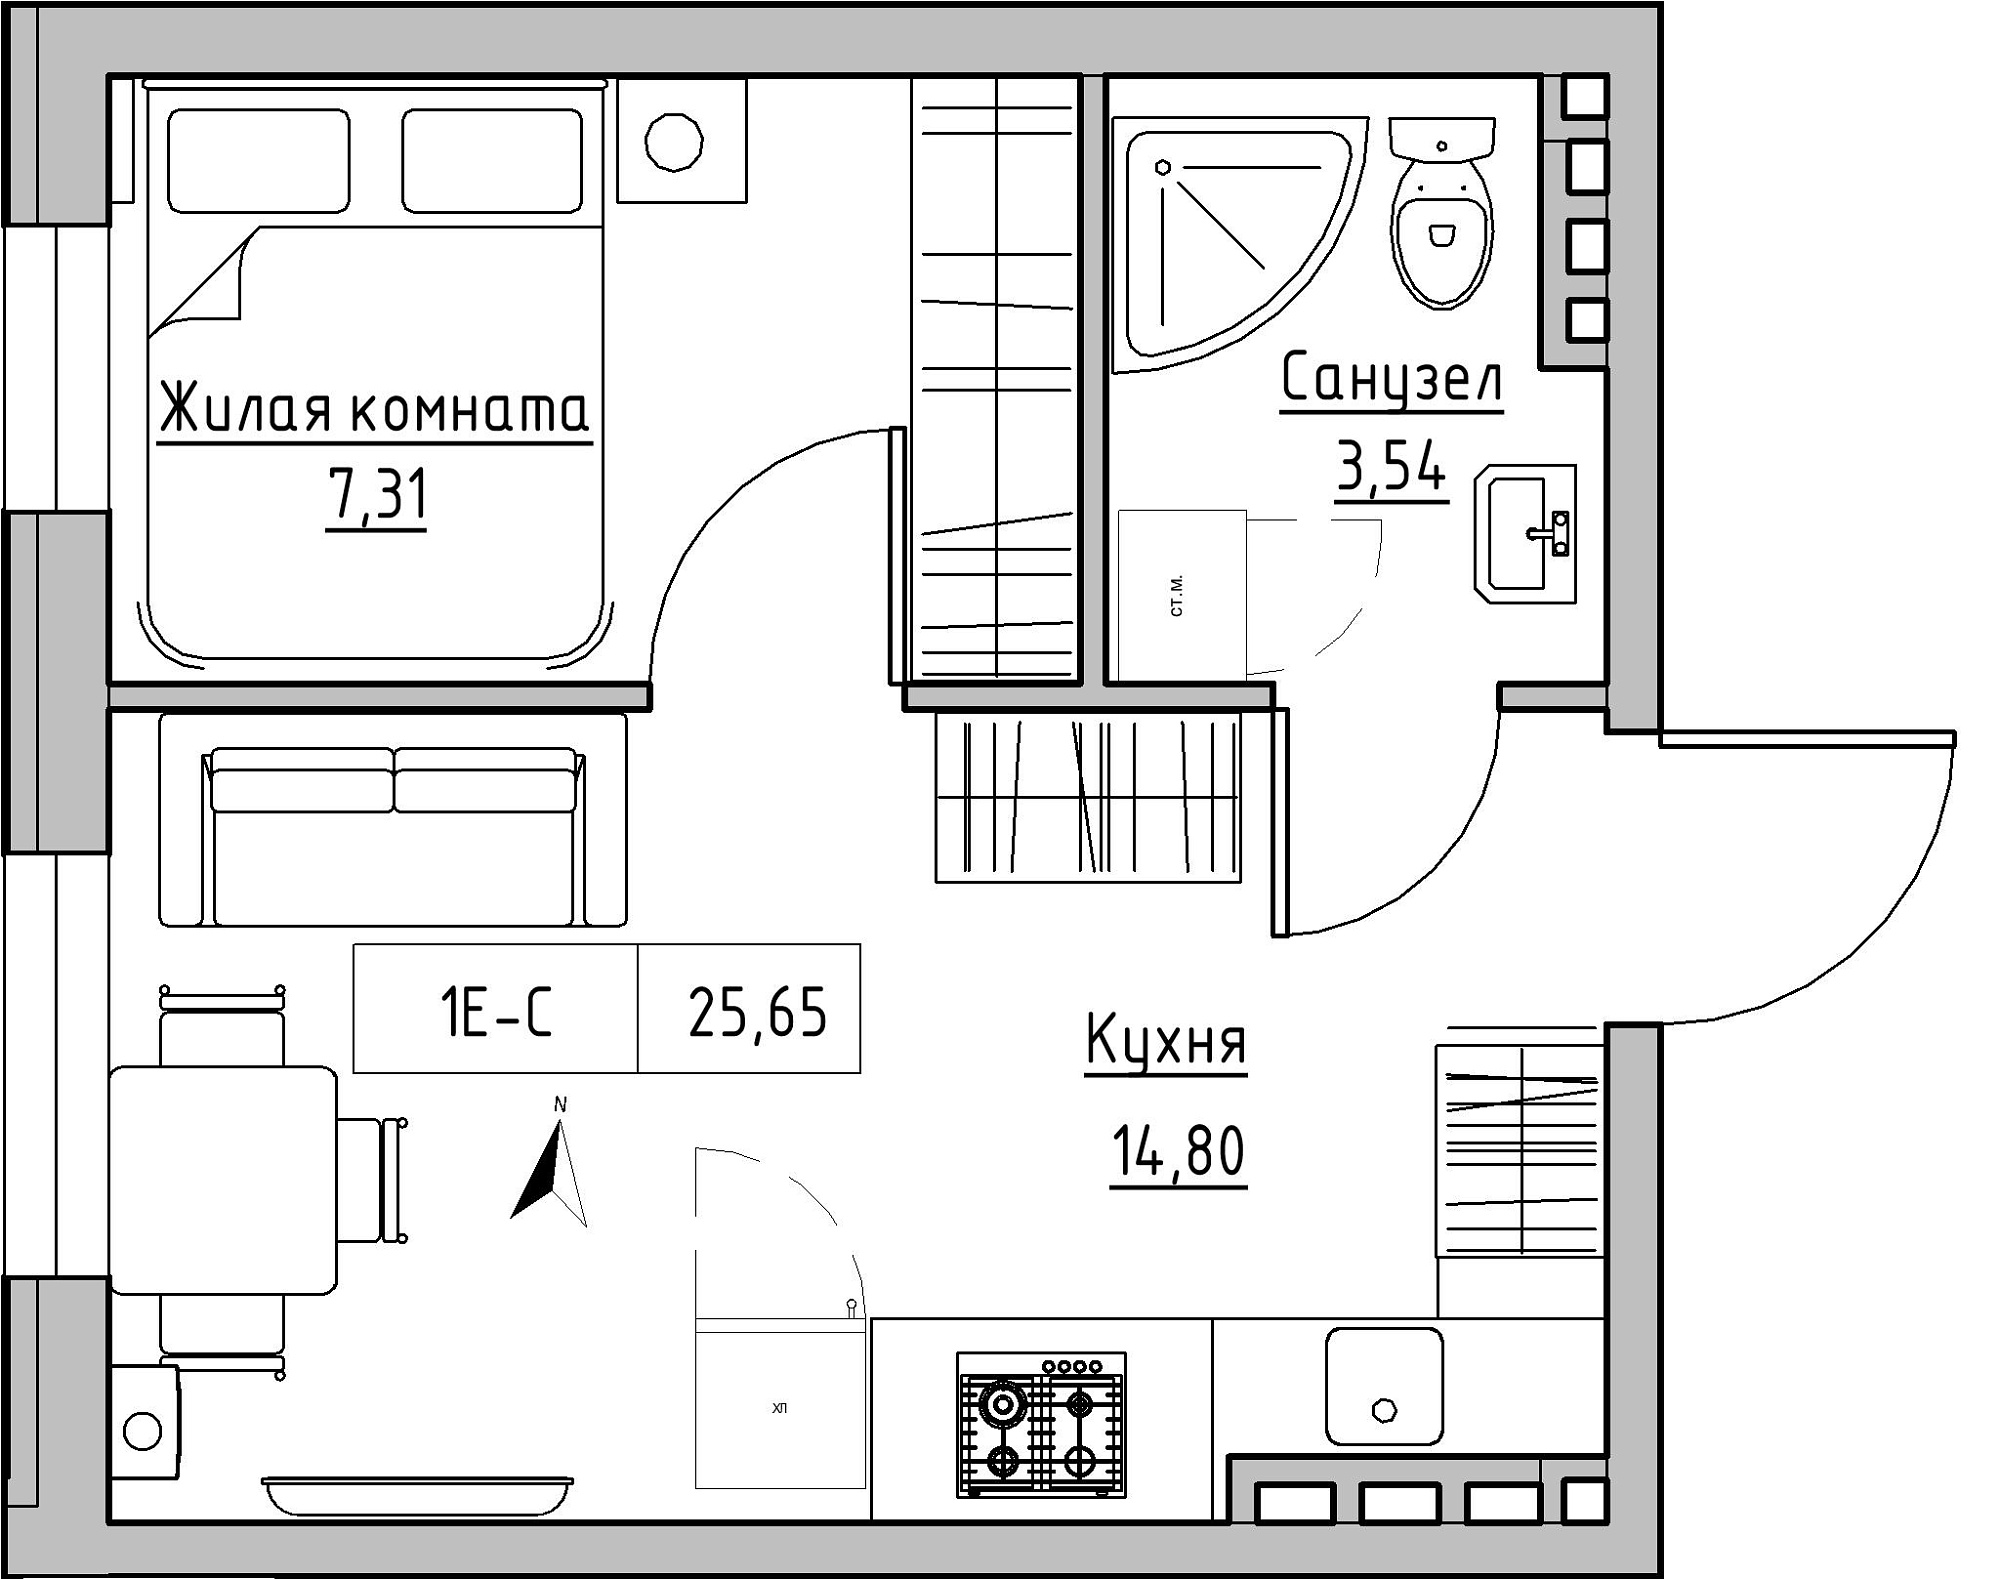 Планування 1-к квартира площею 25.65м2, KS-024-03/0014.